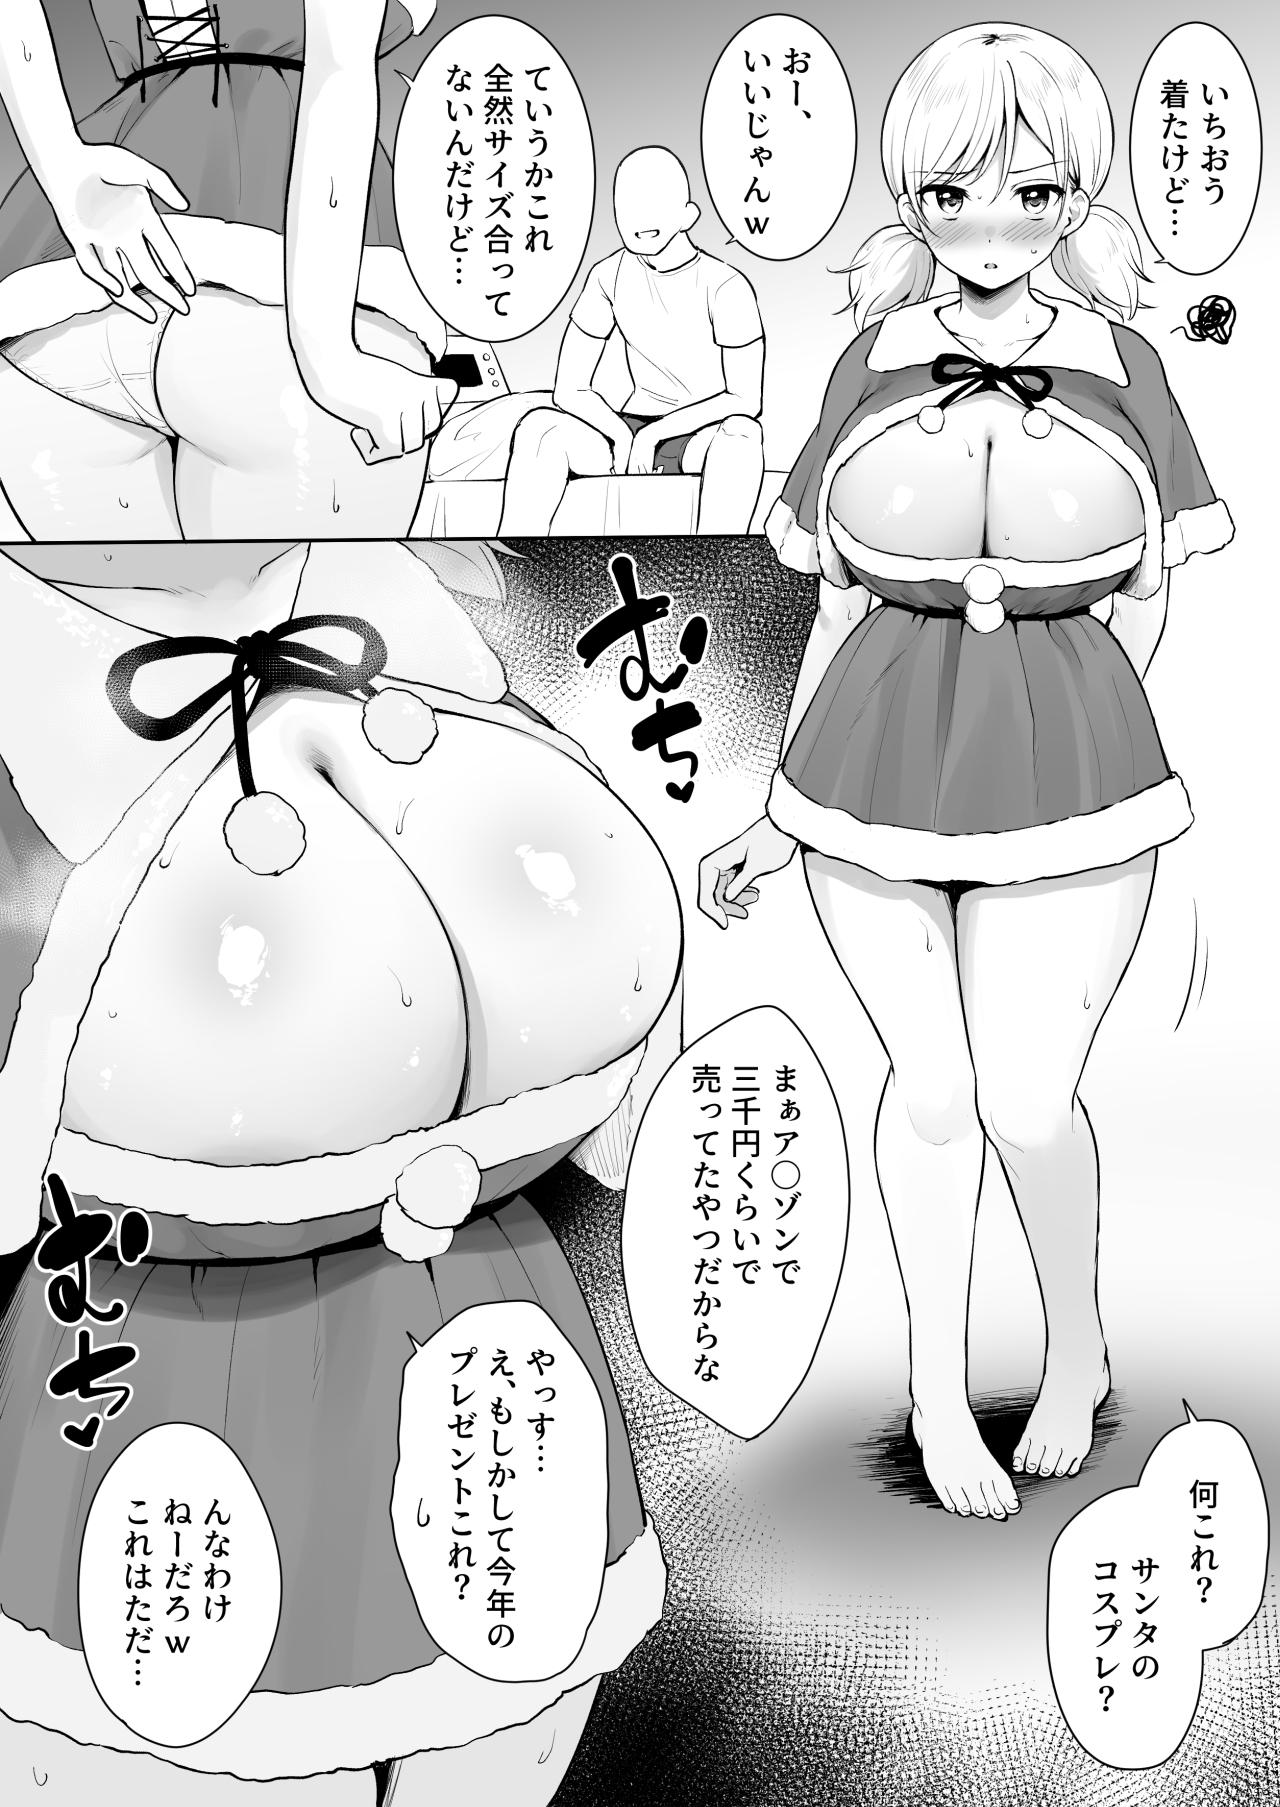 Pussy Licking Shinyu no Imouto - Sei no 6 Jikan Hen Hot Mom - Picture 2